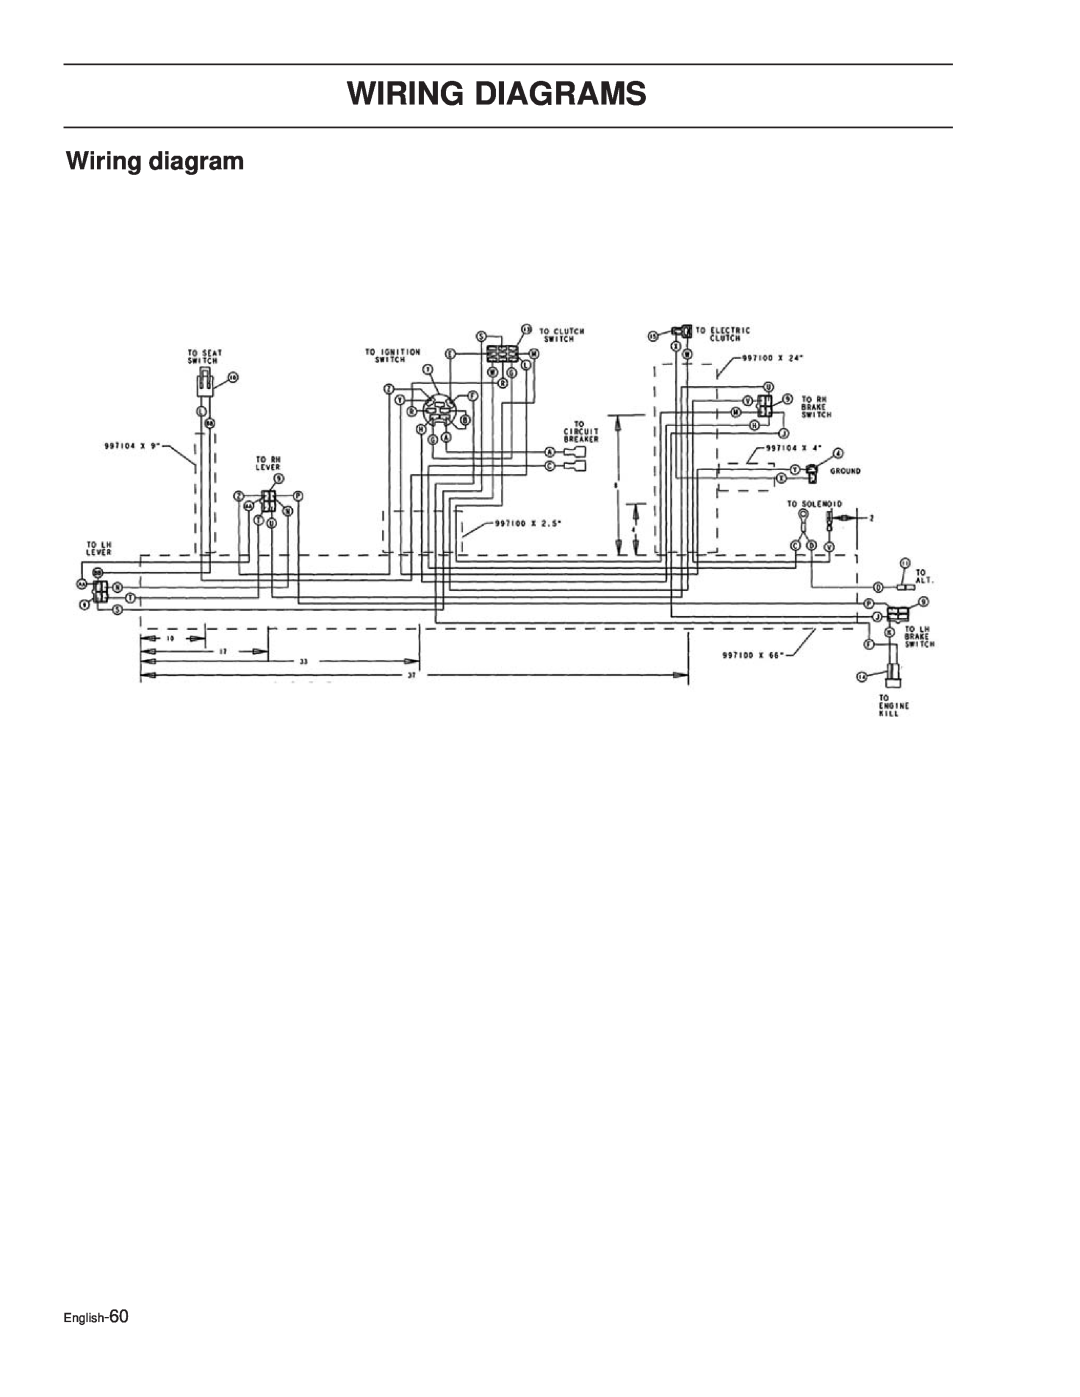 Dixon 42 / 968999689, 44 / 968999538, 44 / 968999611, 44 / 968999547 manual Wiring Diagrams, Wiring diagram, English-60 